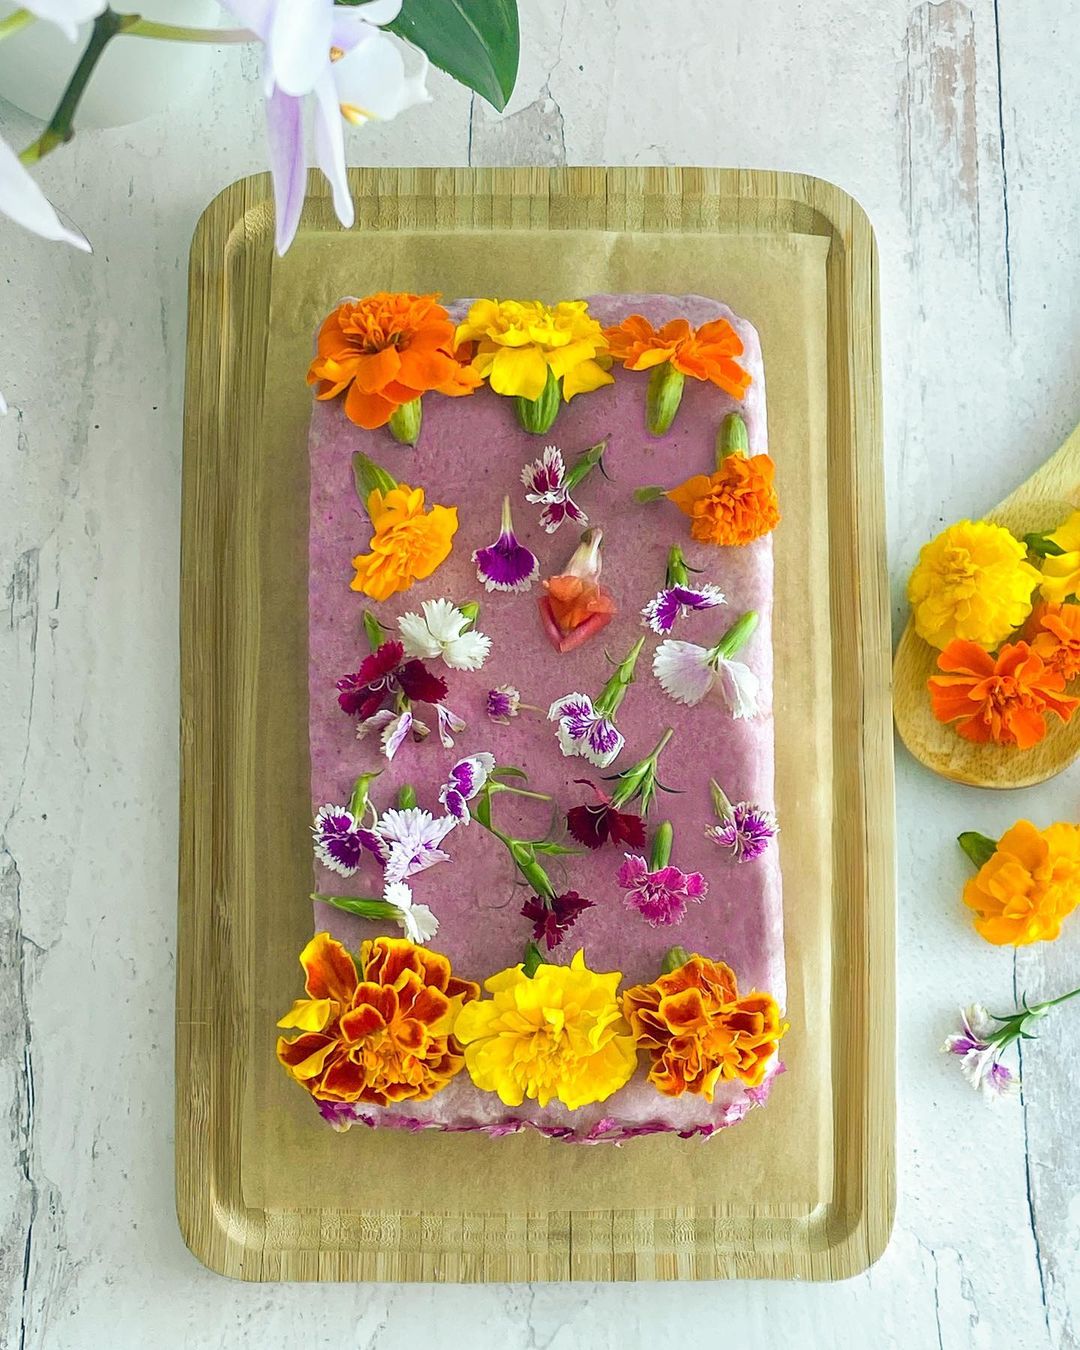 Vegan Flower Cake with Pitaya Vanilla Frosting